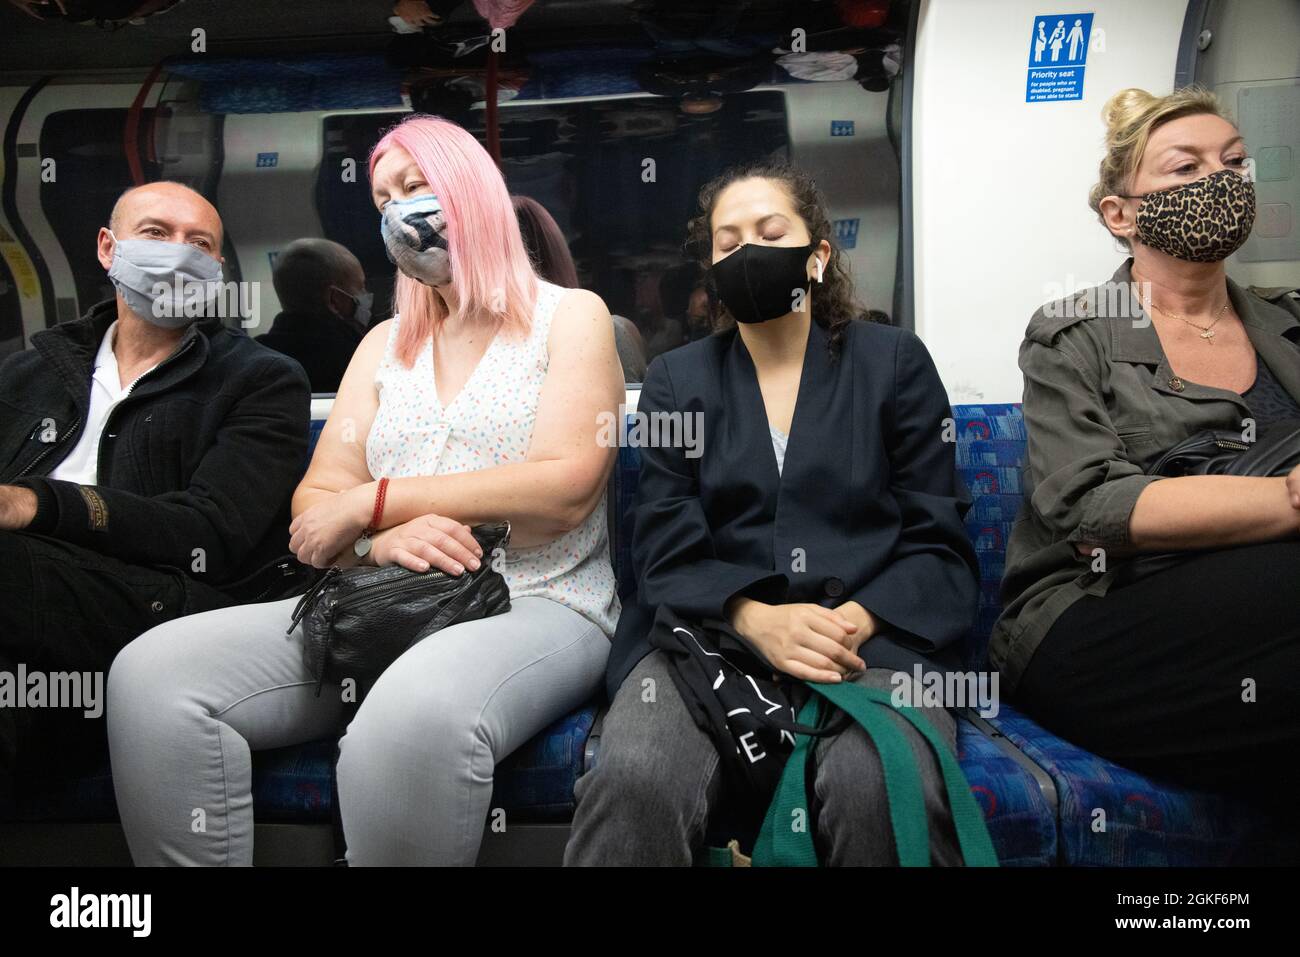 Covid 19 UK; persone che indossano maschere durante la pandemia COVID 19 che viaggiano sulla metropolitana di Londra, Regno Unito Foto Stock